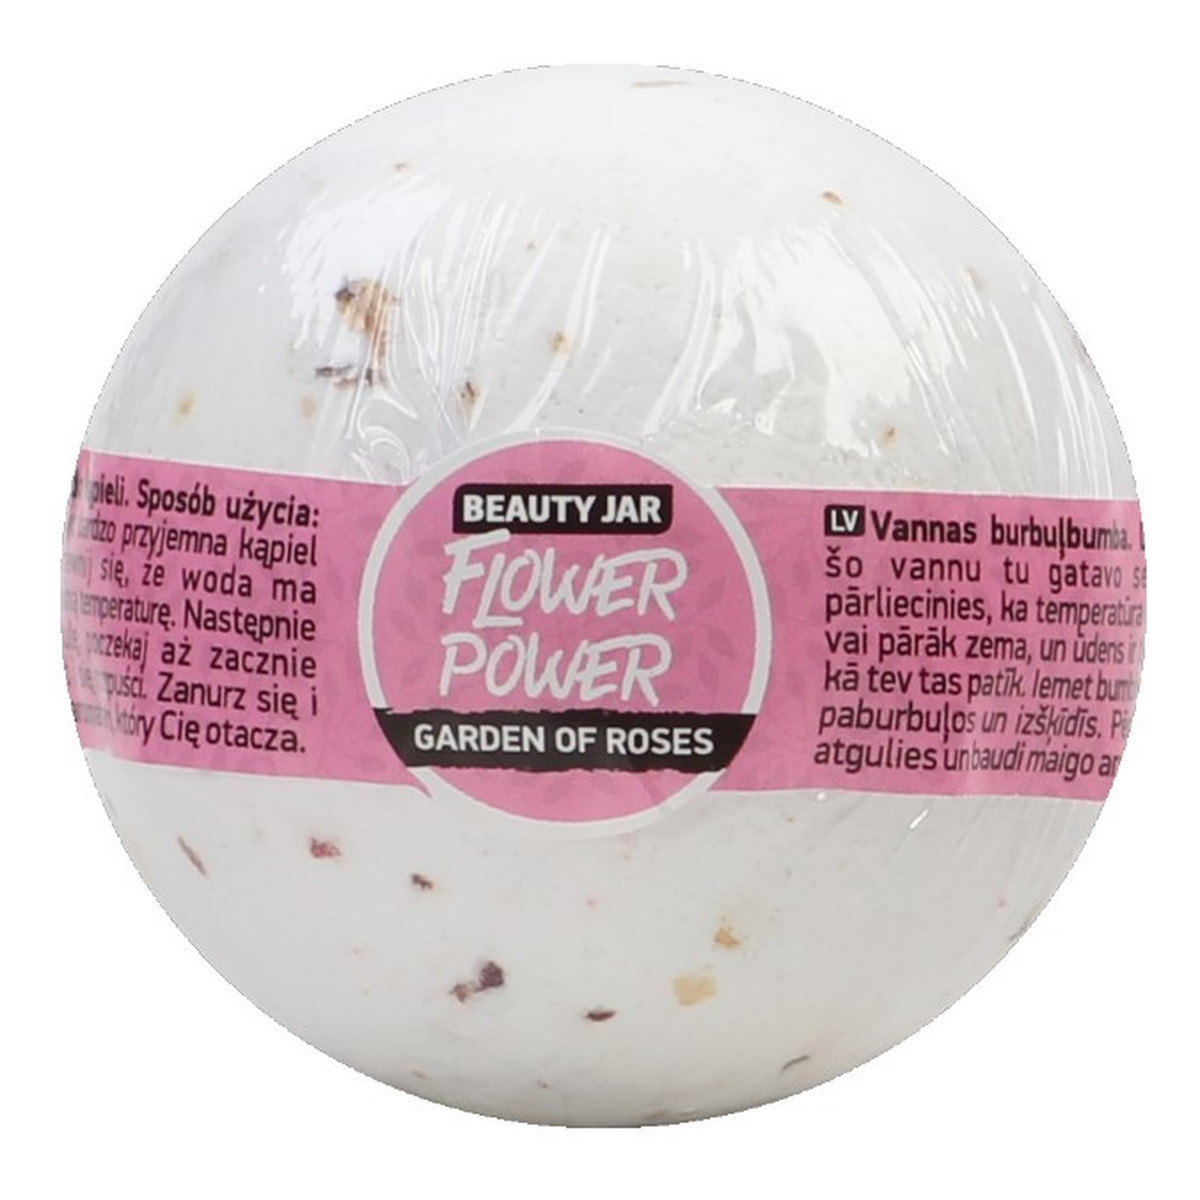 Beauty Jar FLOWER POWER Musująca kula do kąpieli ze słodkim olejem migdałowym i różą 150g